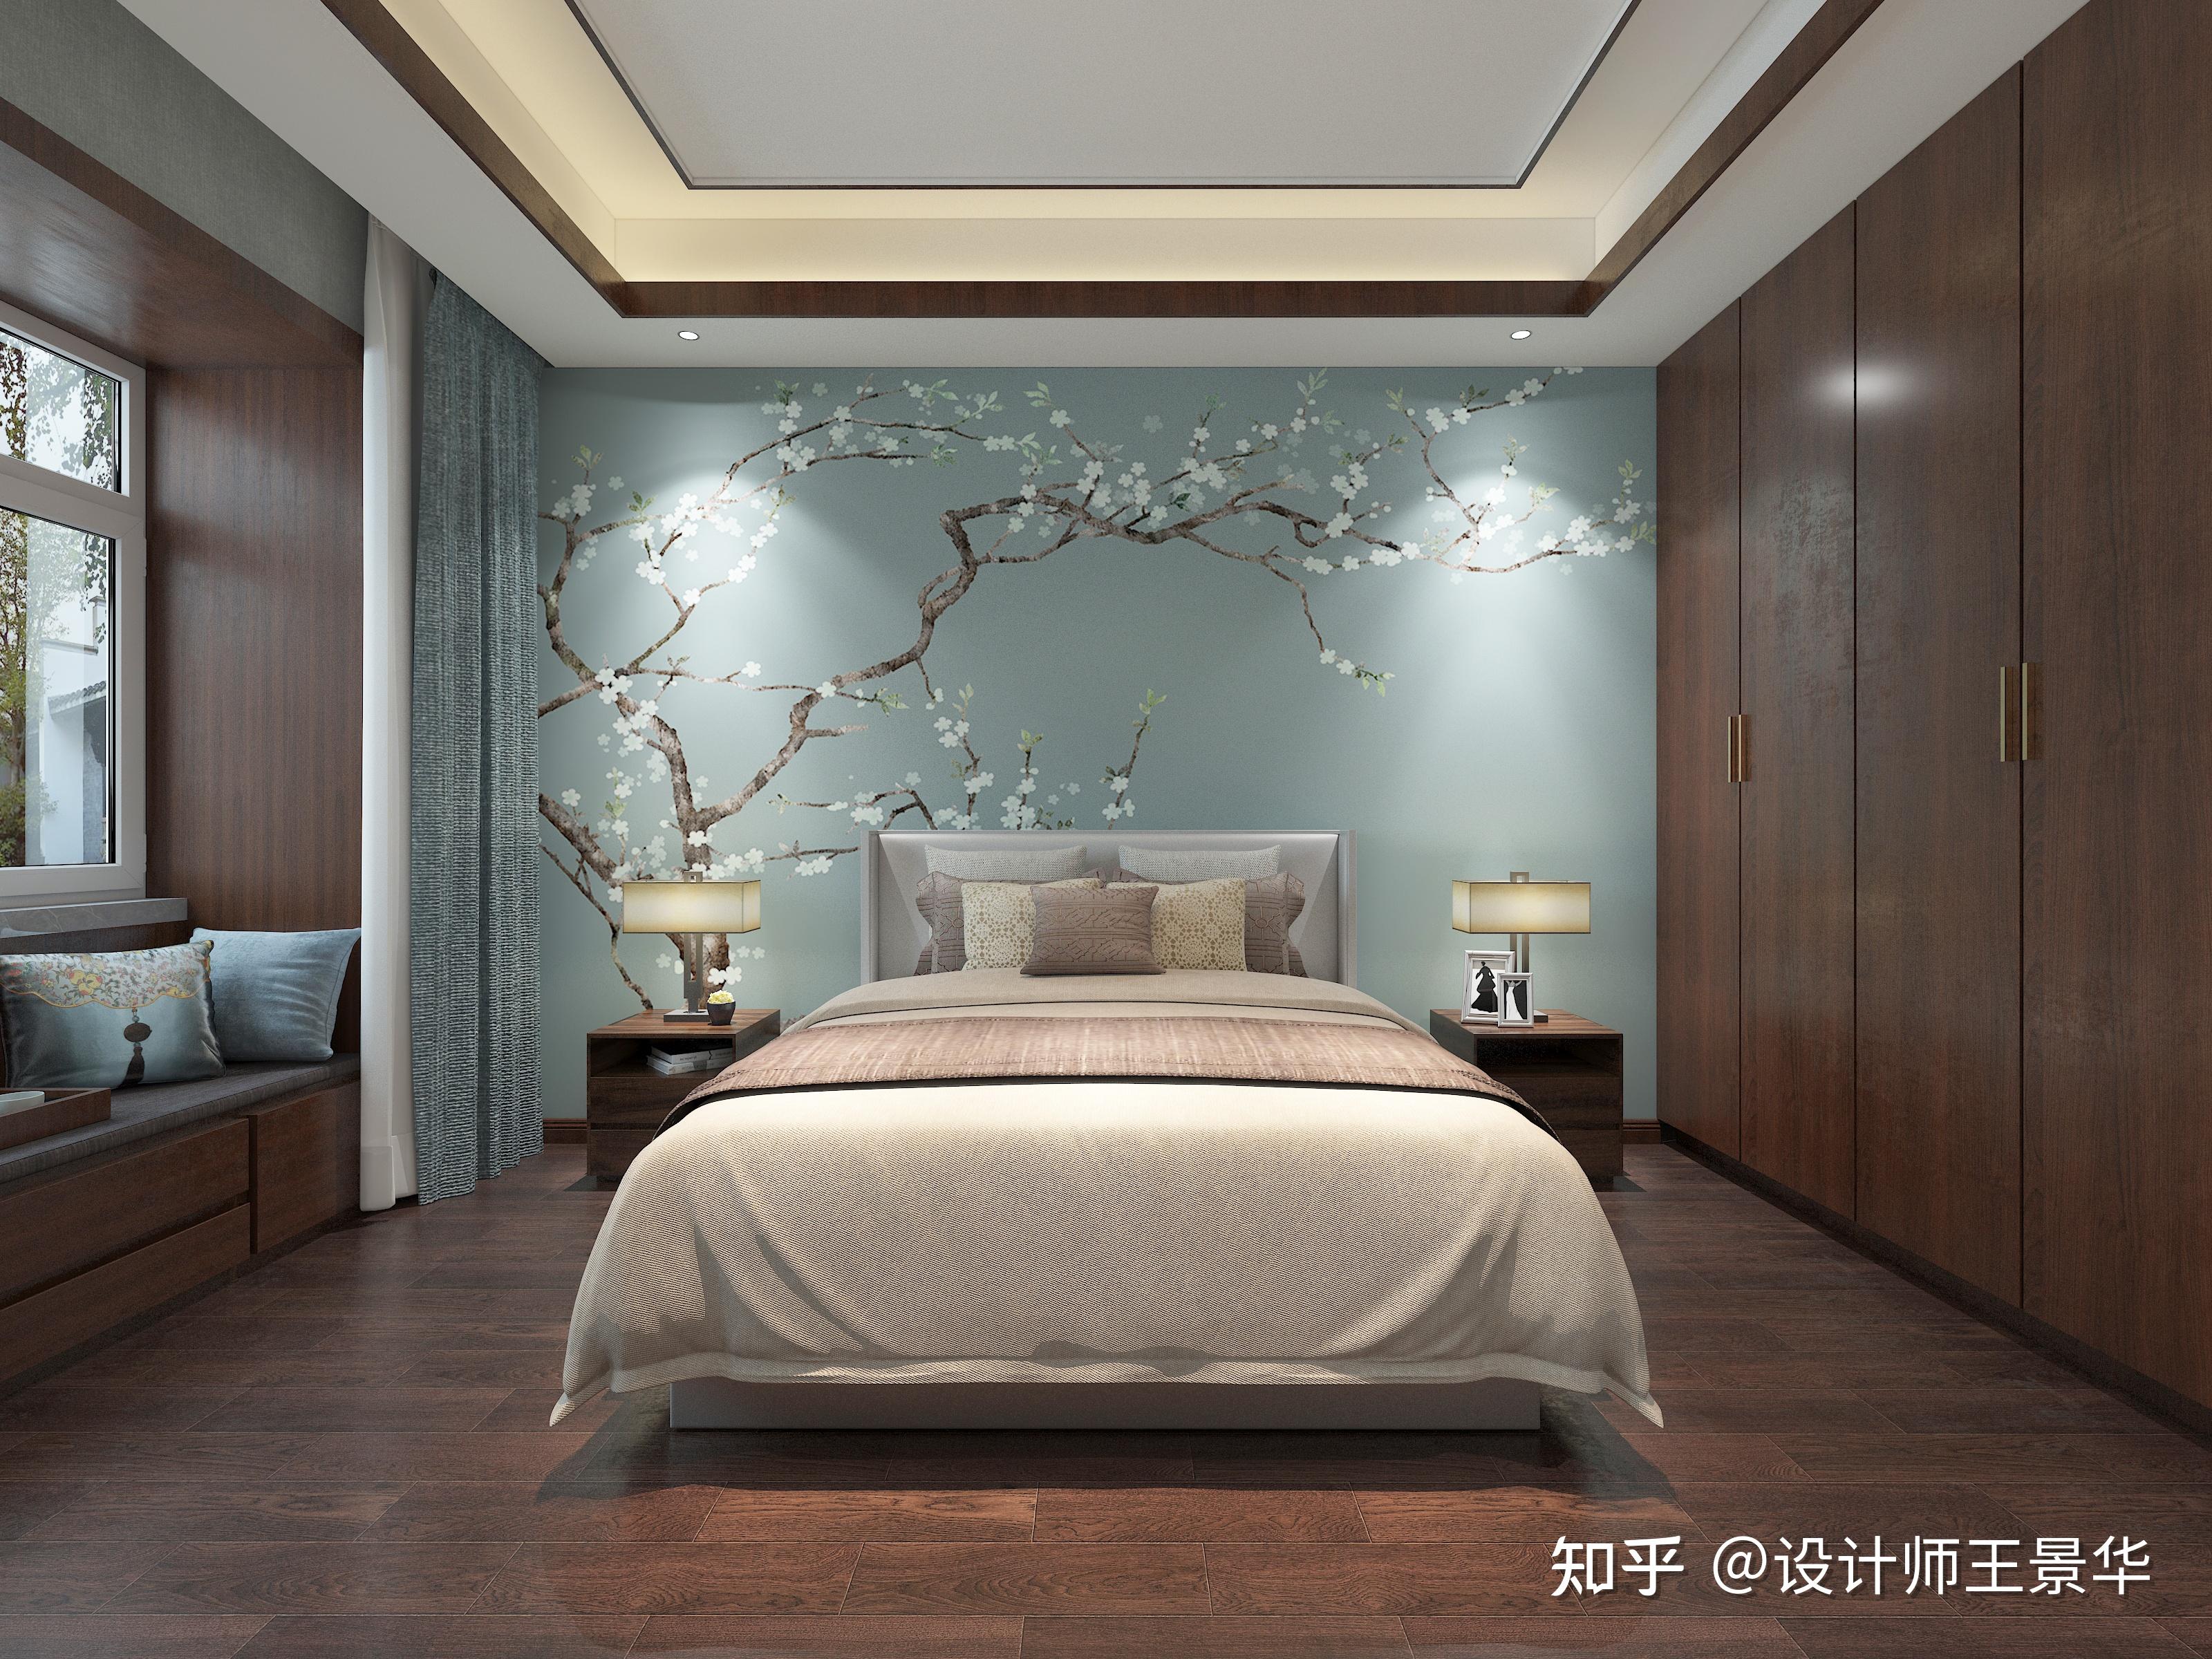 卧室床头背景是梅花,象征着顽强,雅致和贞节,代表着傲然挺立,高洁